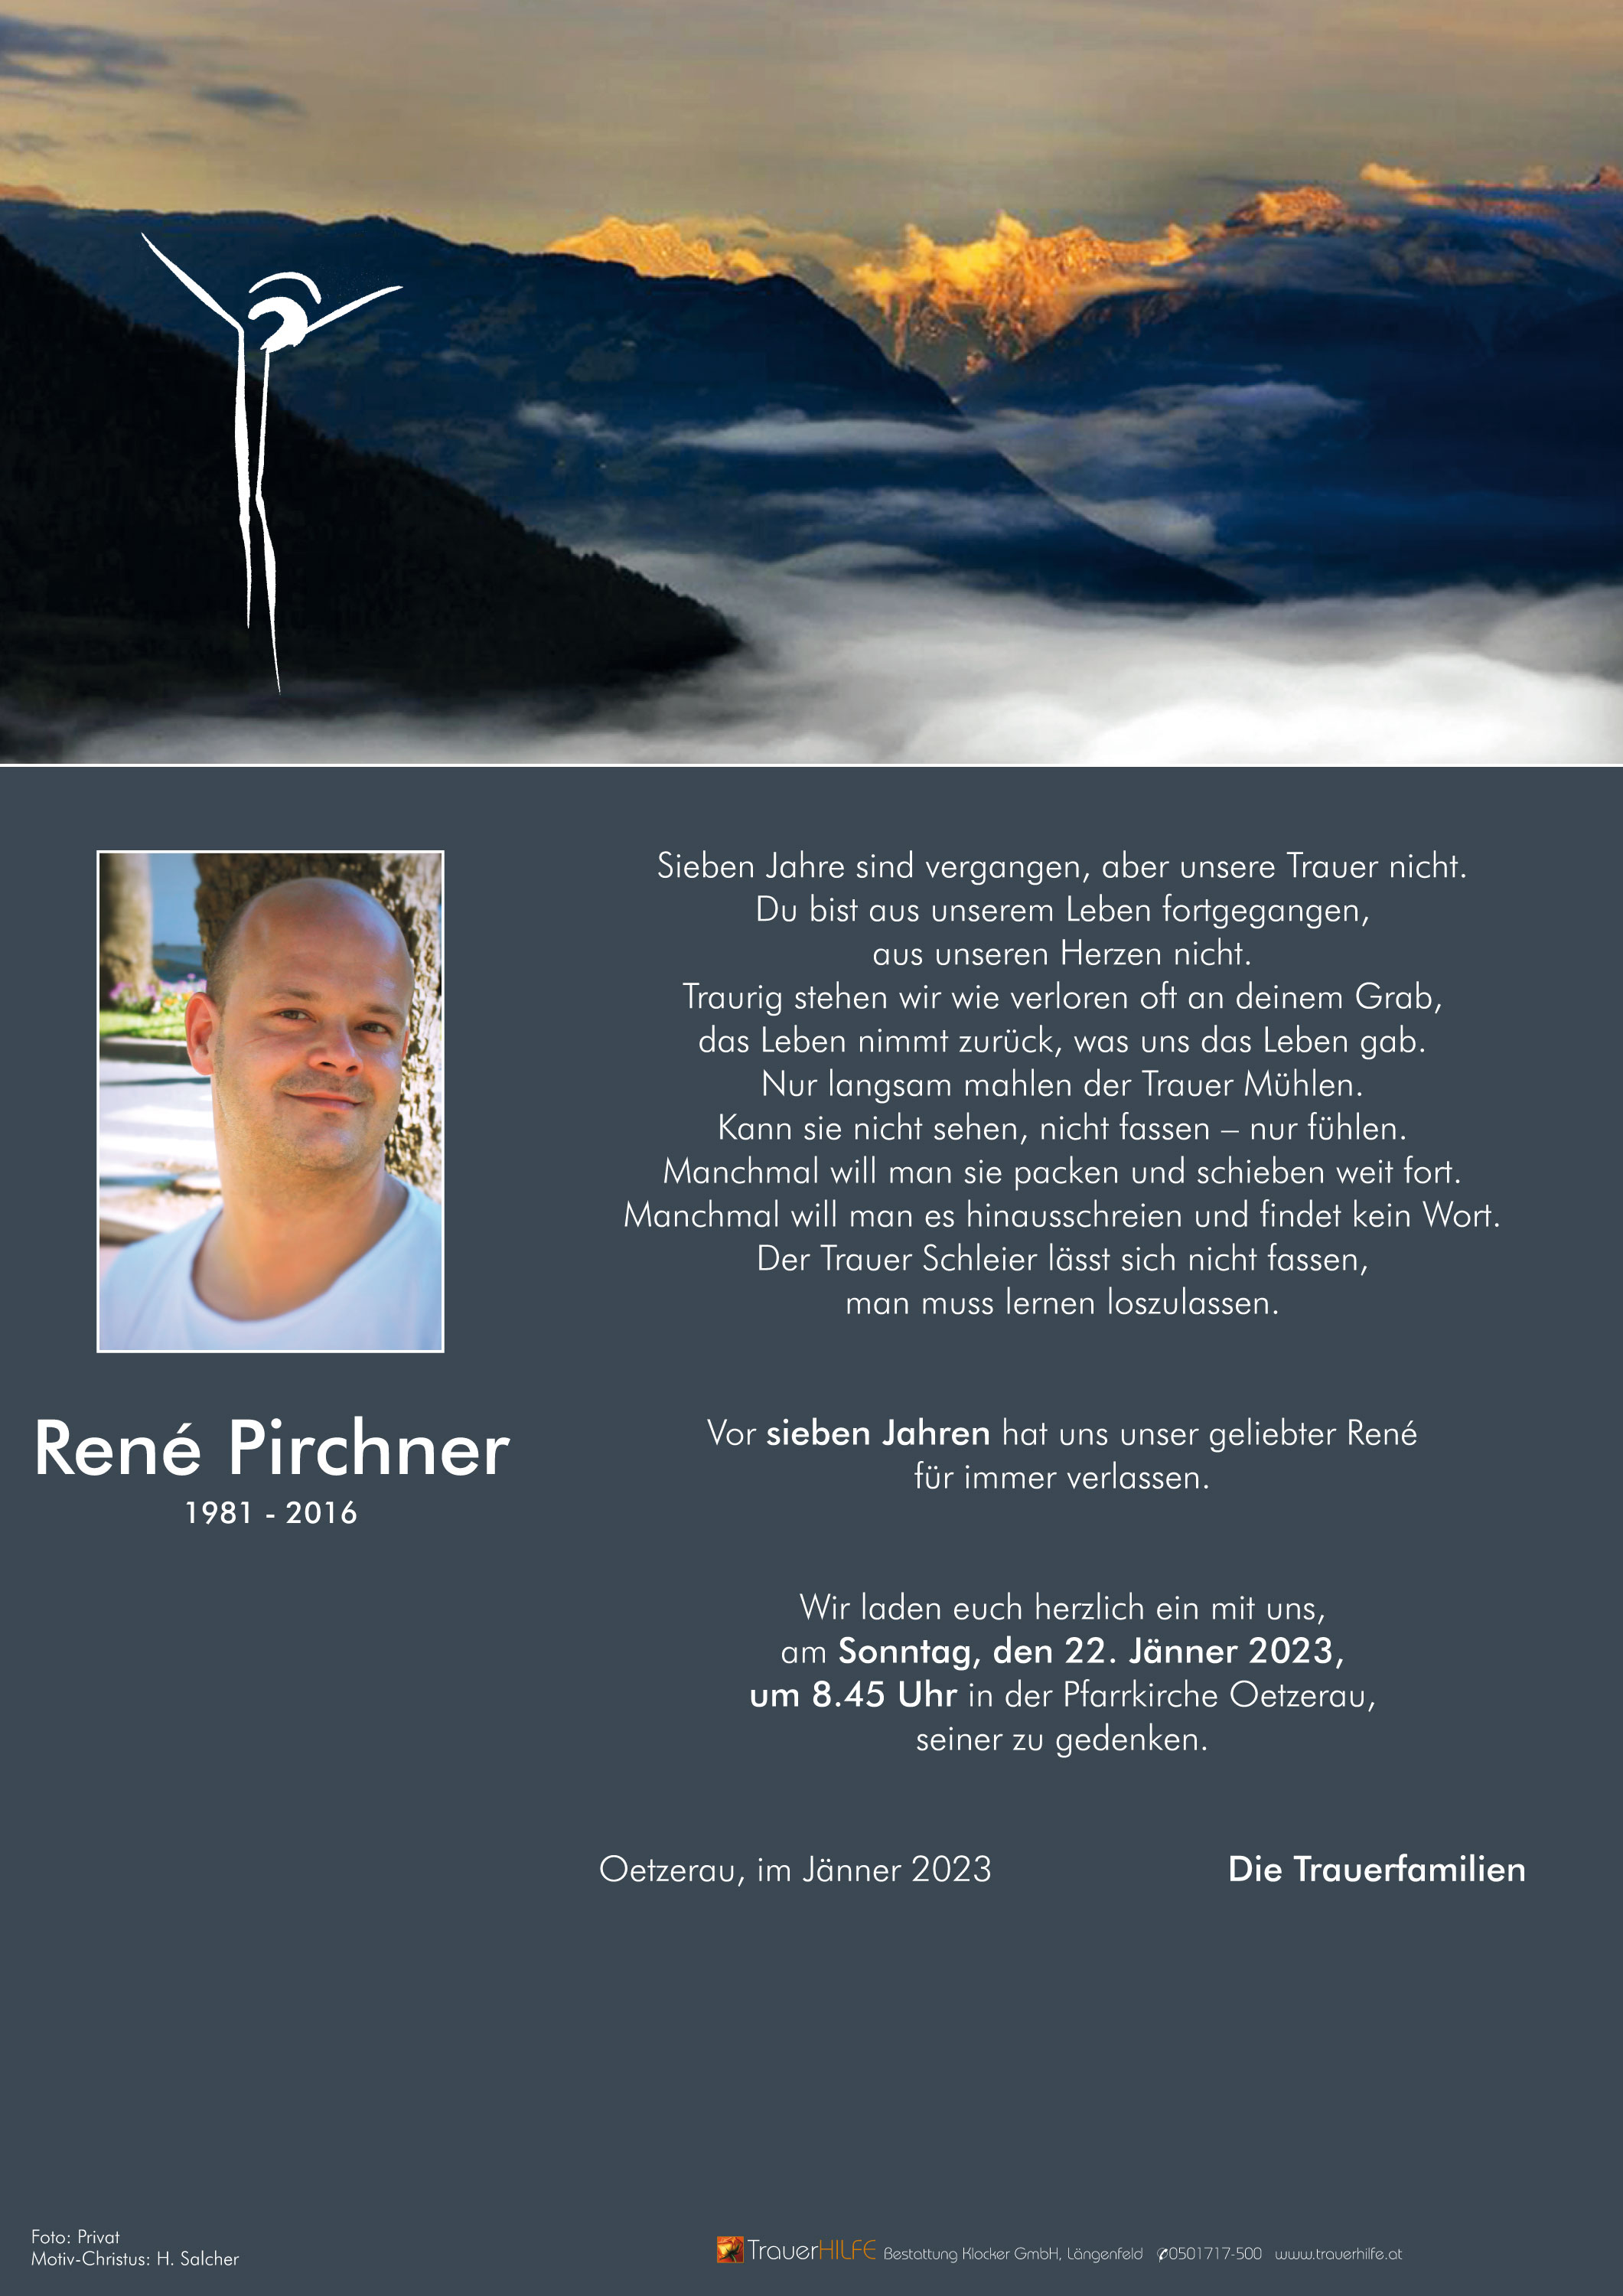 René Pirchner